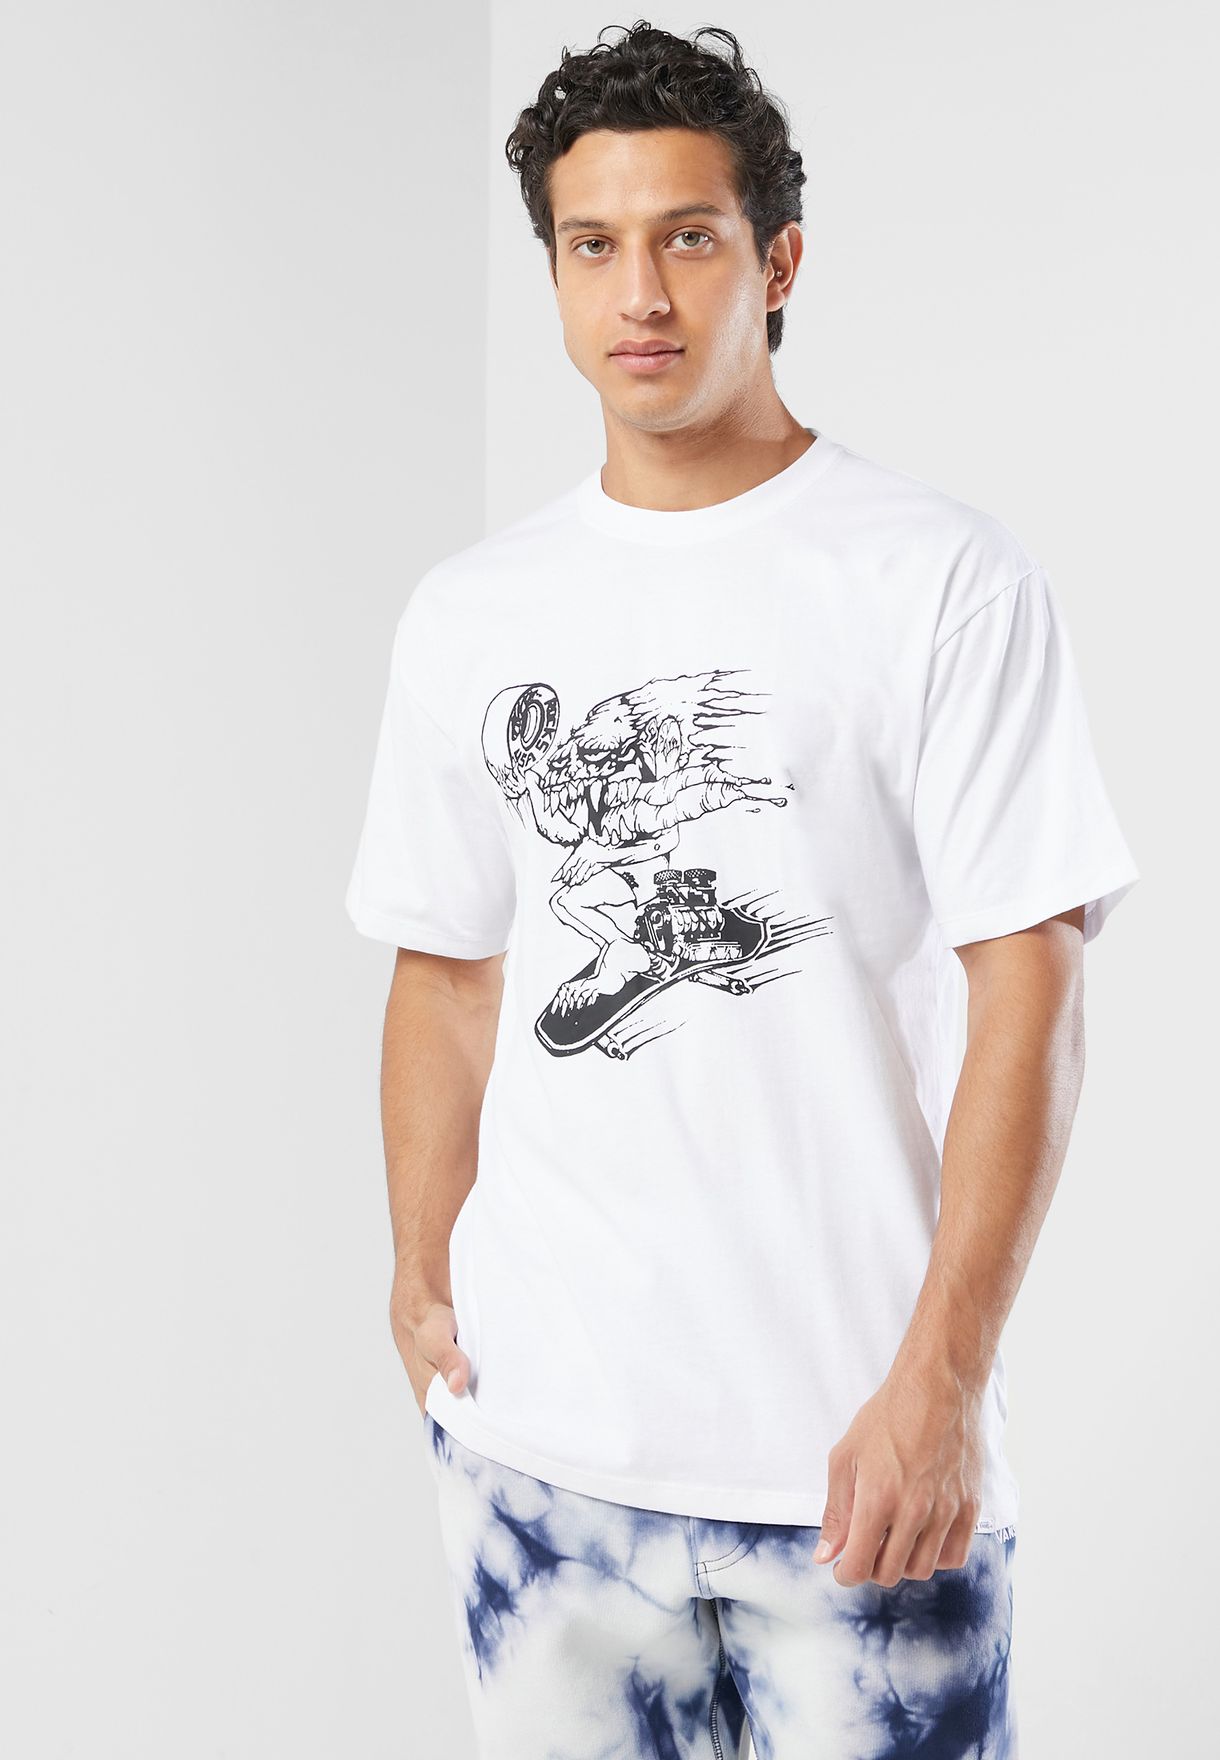 Alva Skates T-Shirt